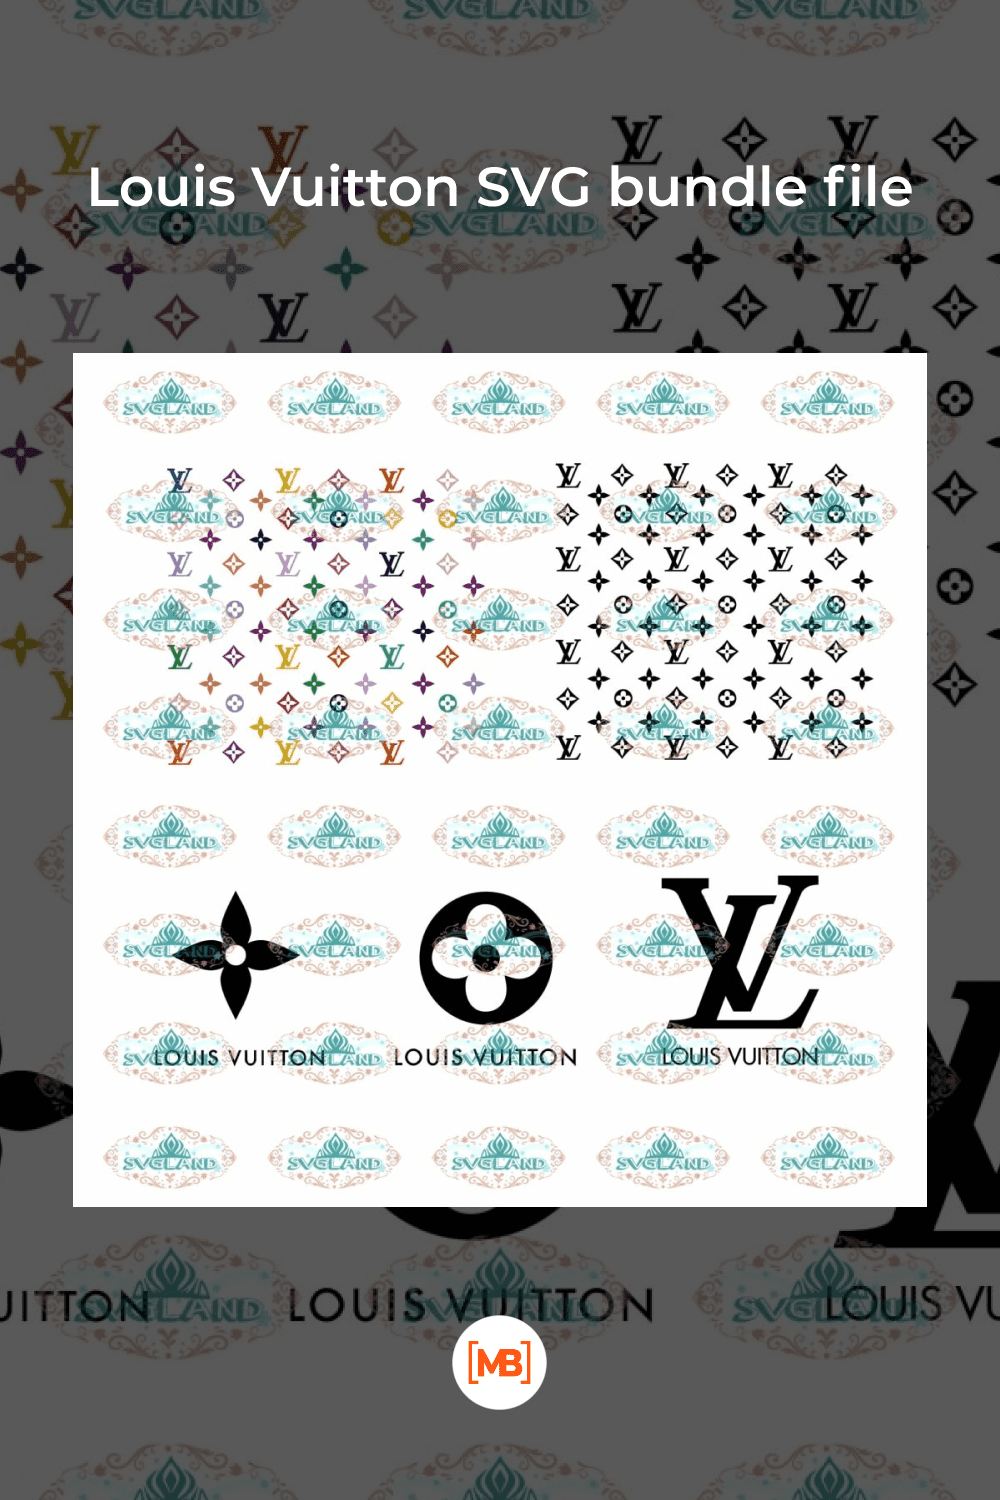 Louis Vuitton SVG bundle file.